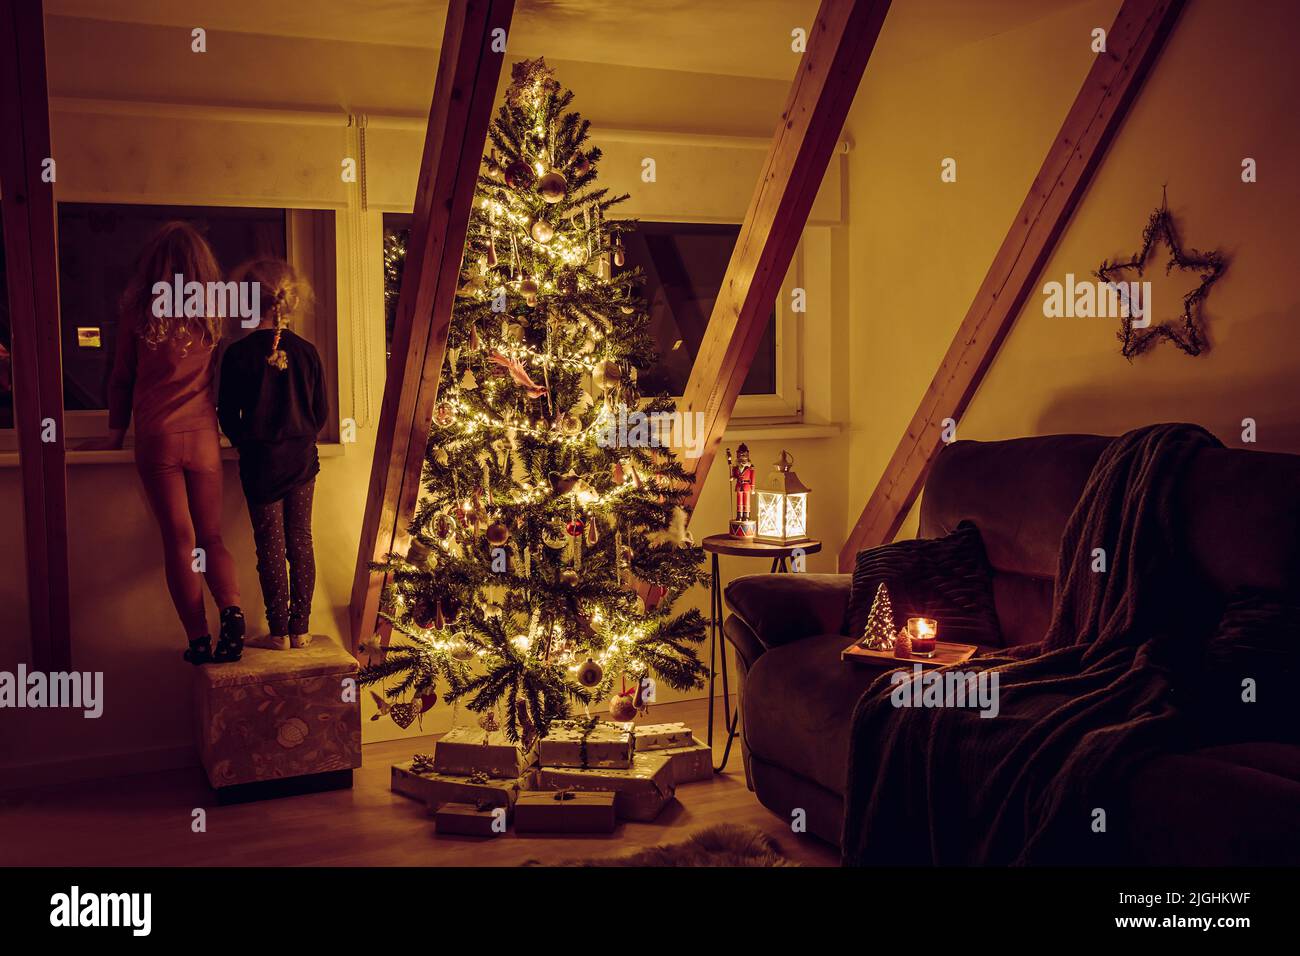 Hogar sala de estar con árbol de Navidad decorado, luces y decoraciones colgando, regalos bajo el árbol y dos hermanas mirando por la ventana. Foto de stock